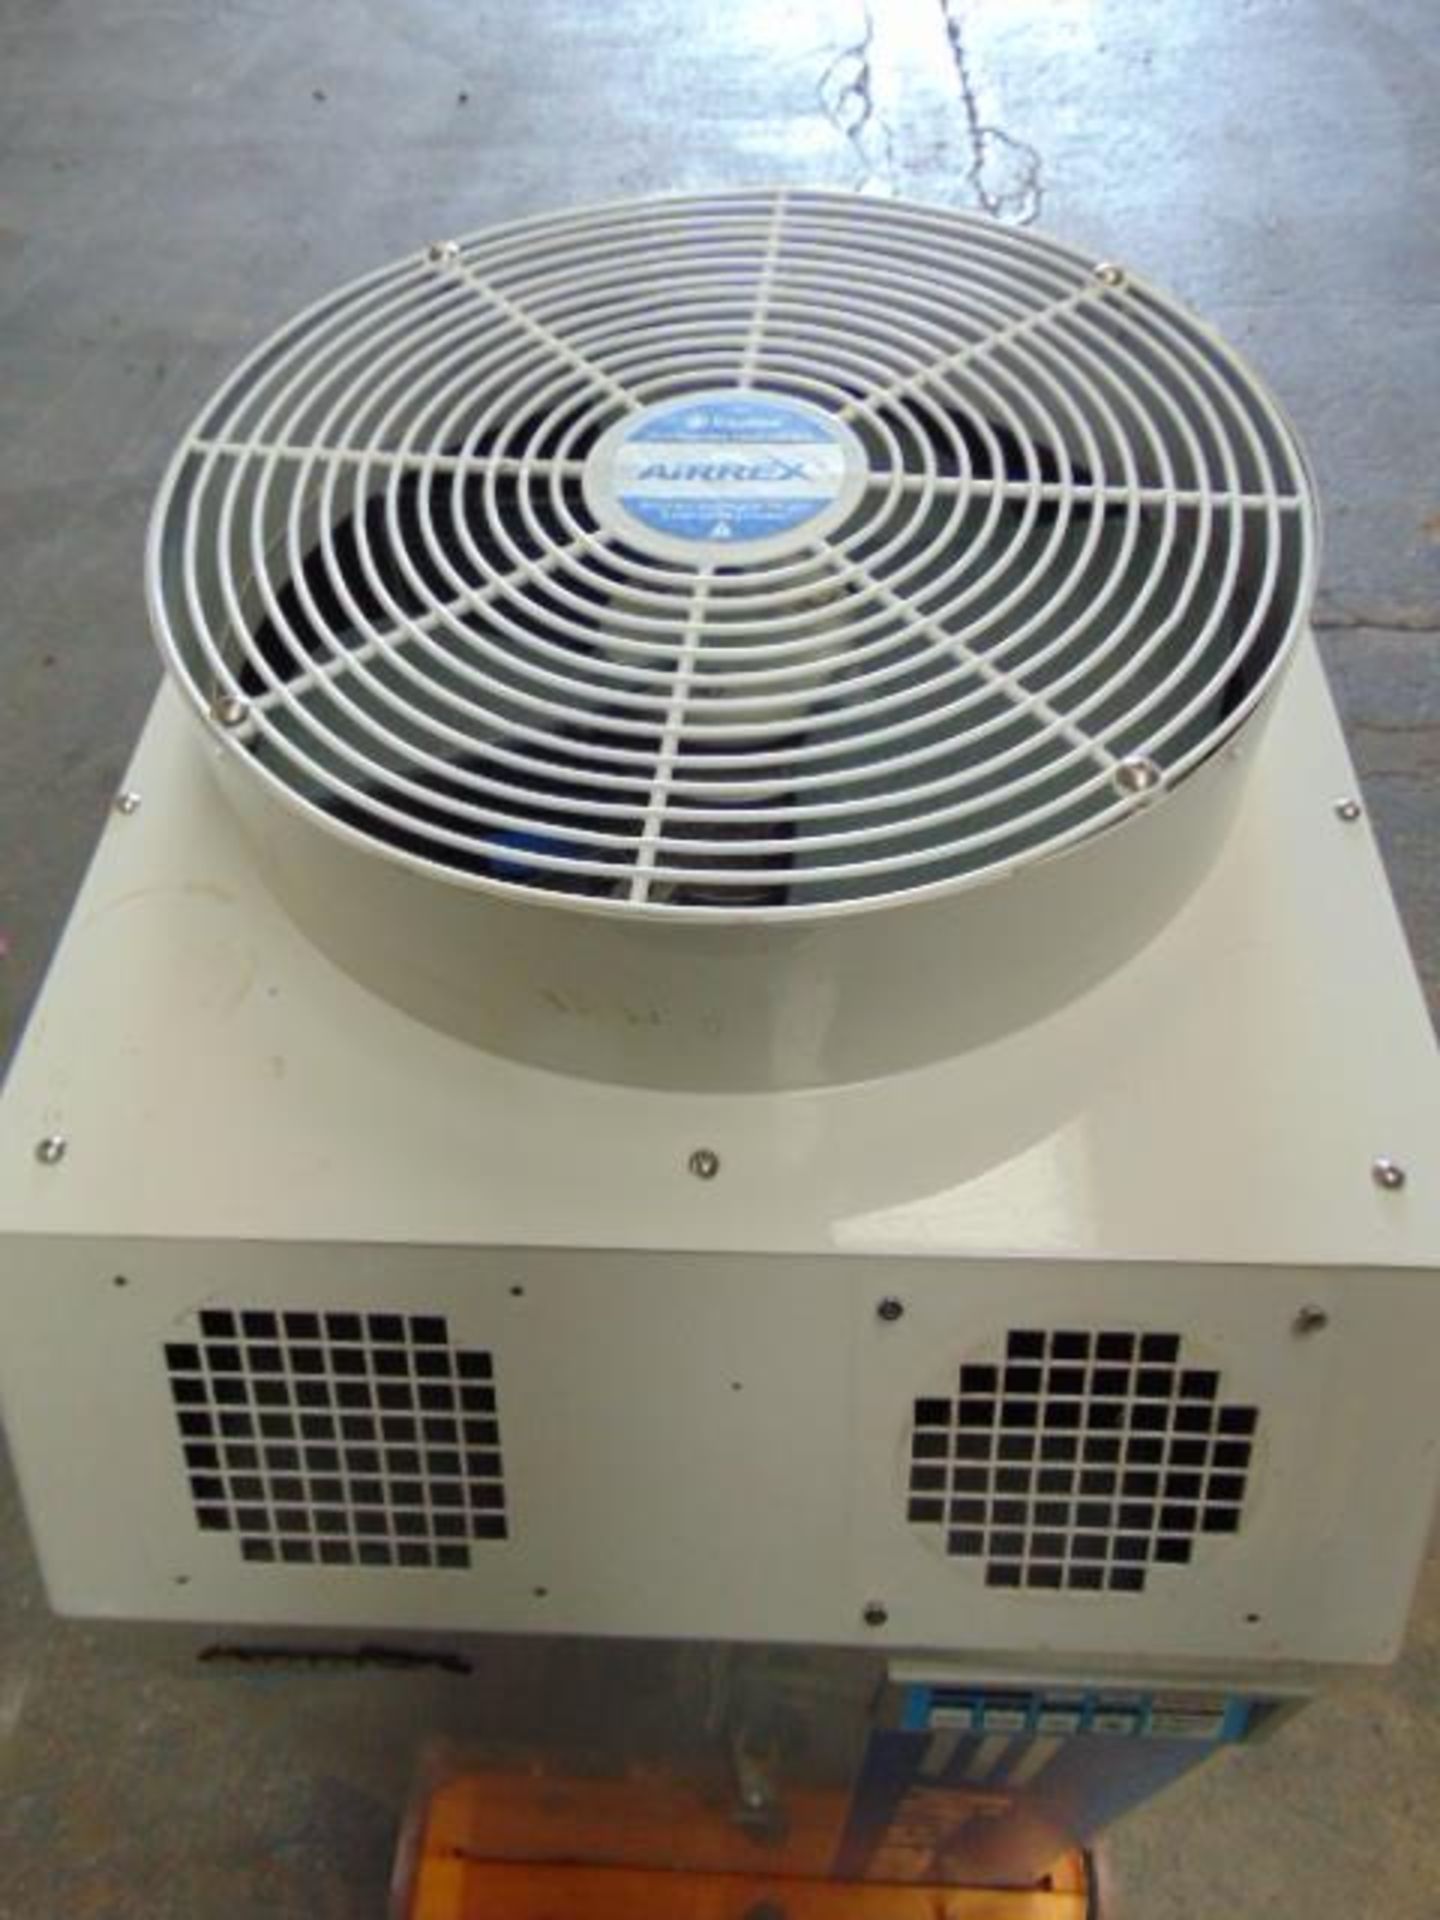 UNUSED Airrex HSC-2500M Air Conditioning Unit unused - Image 5 of 11